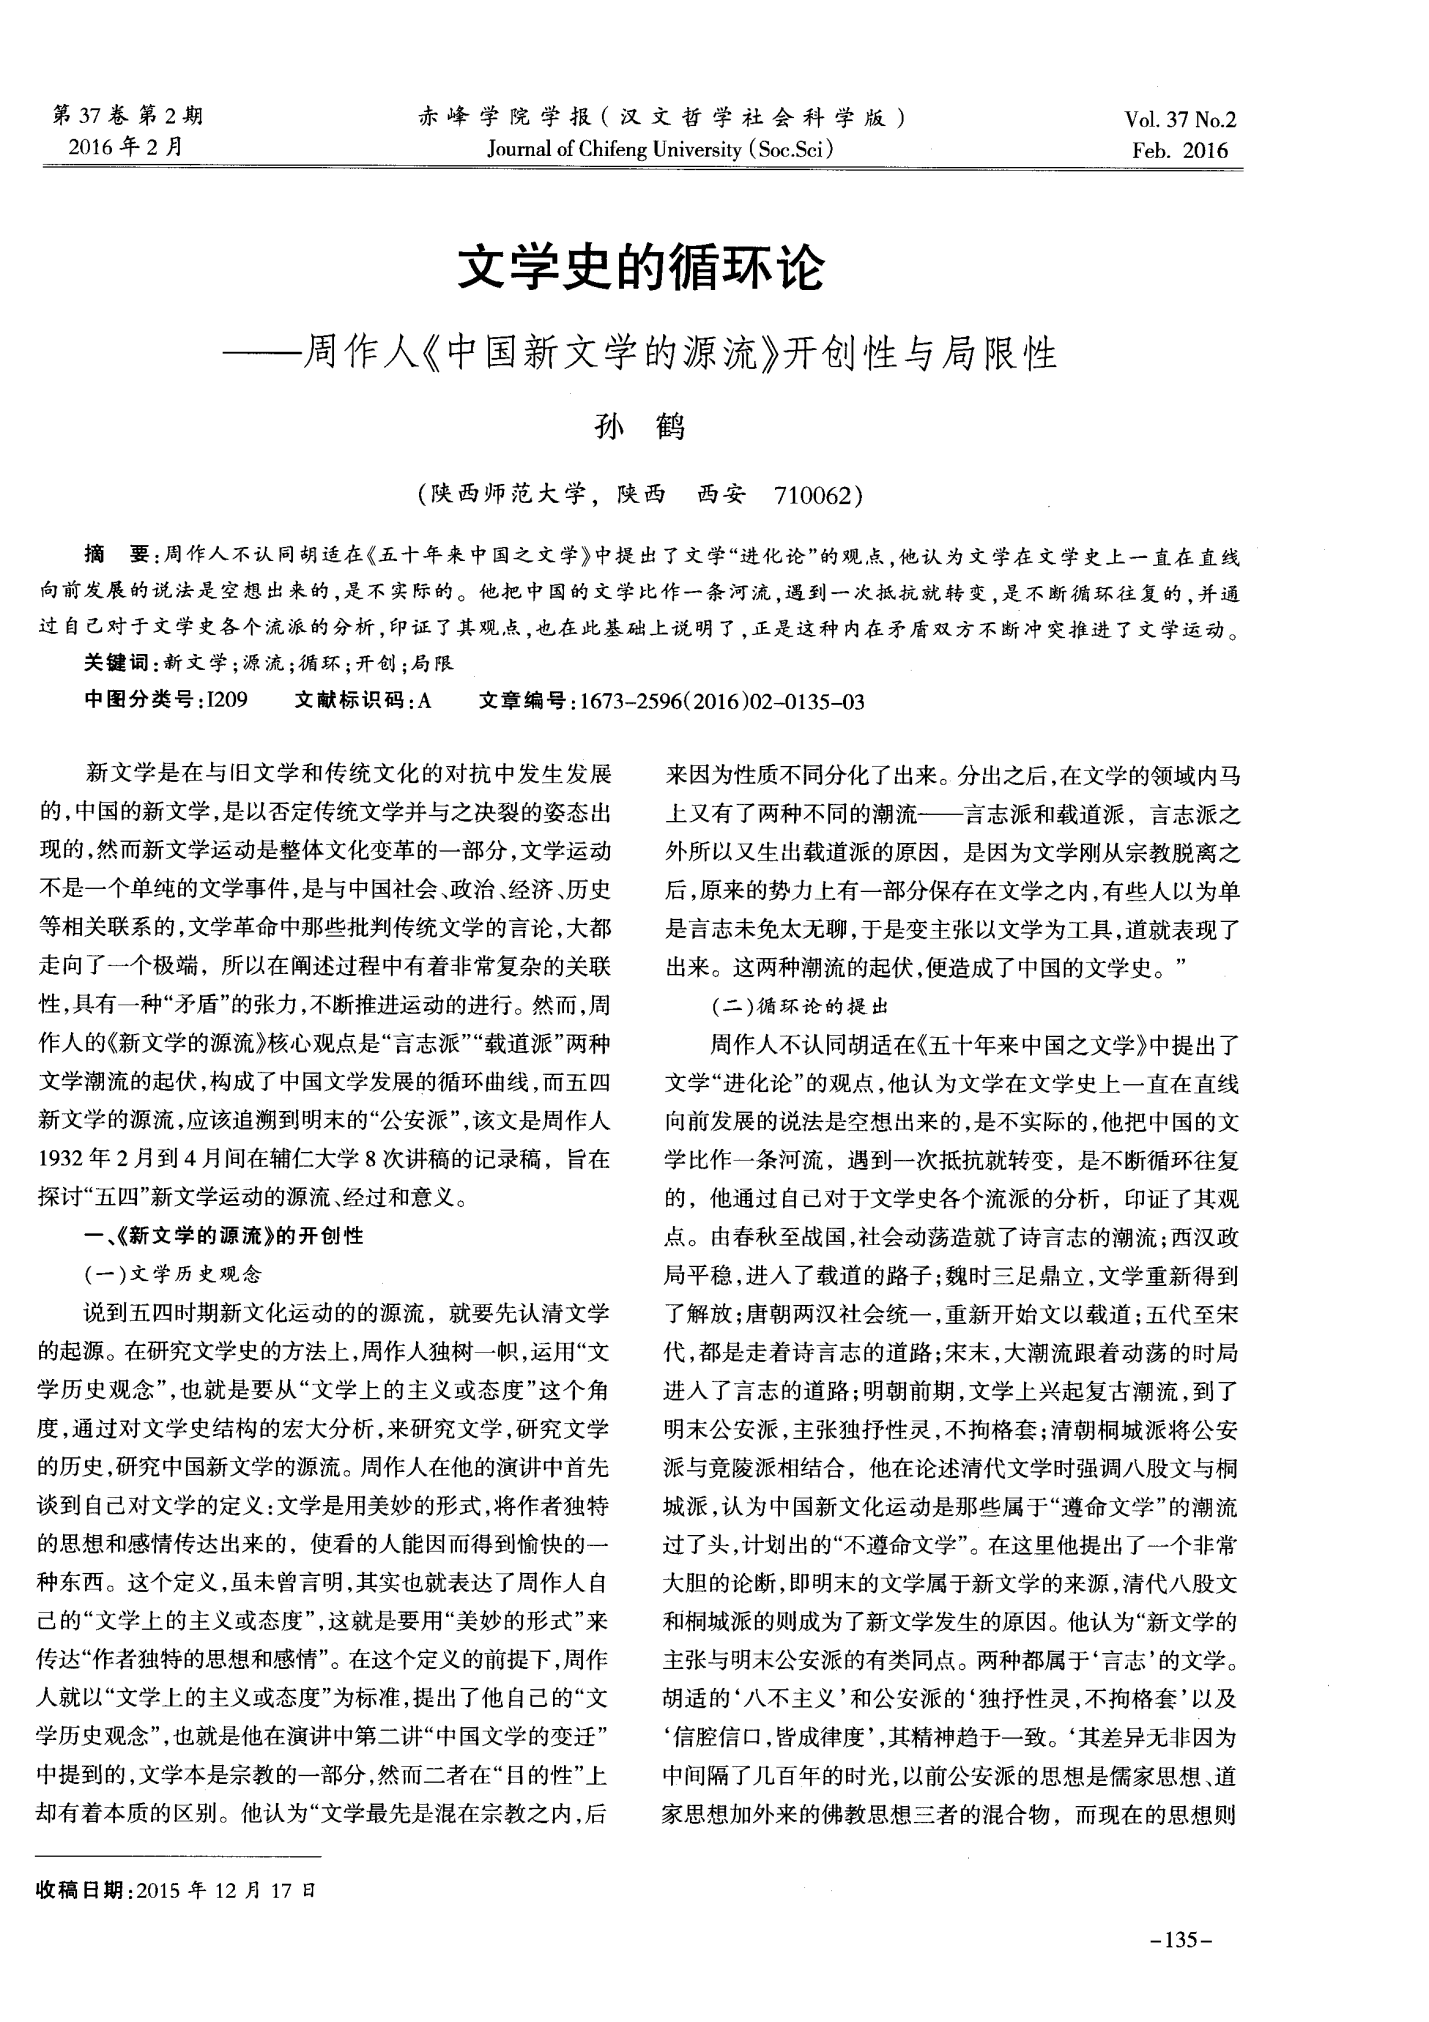 文学史的循环论——周作人《中国新文学的源流》开创性与局限性